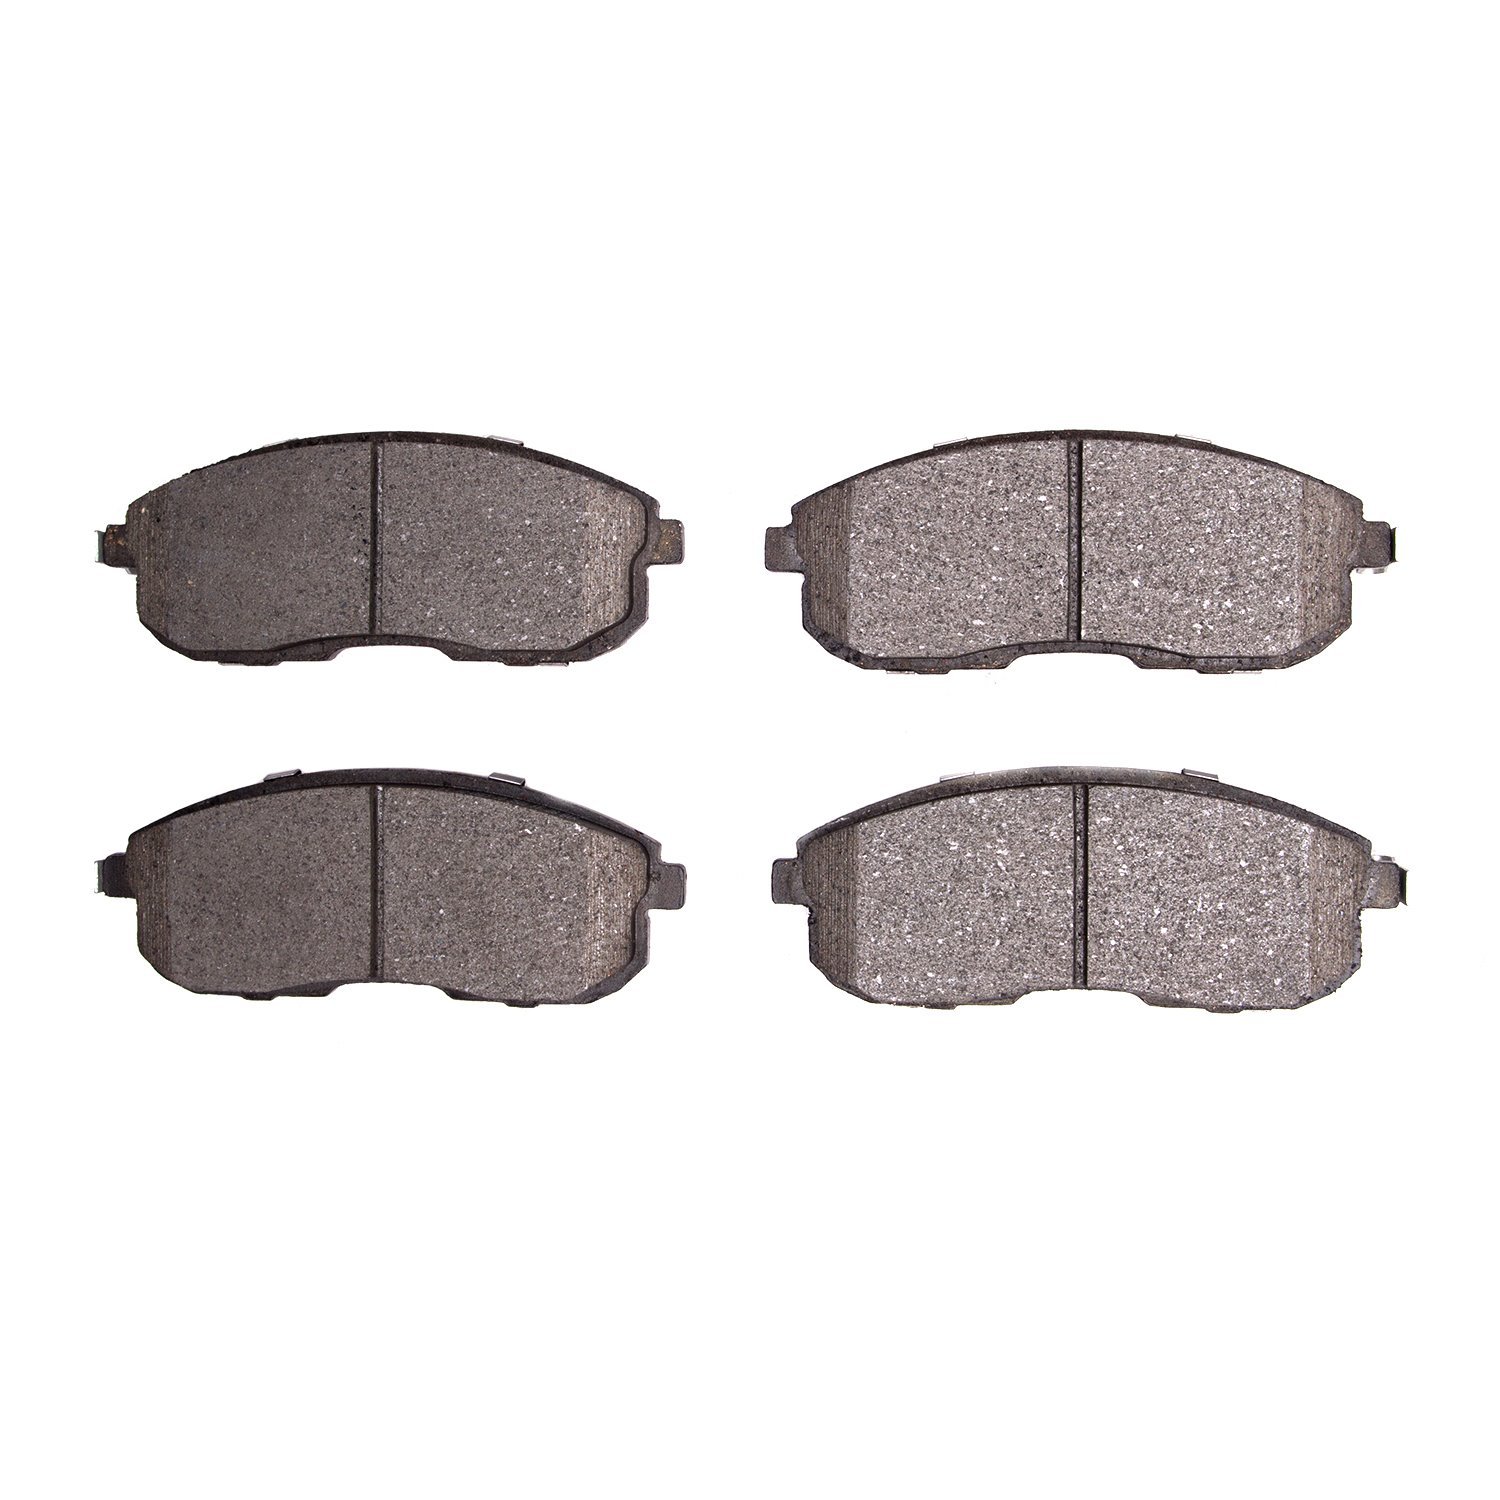 Ceramic Brake Pads, 2002-2019 Fits Multiple Makes/Models, Position: Front